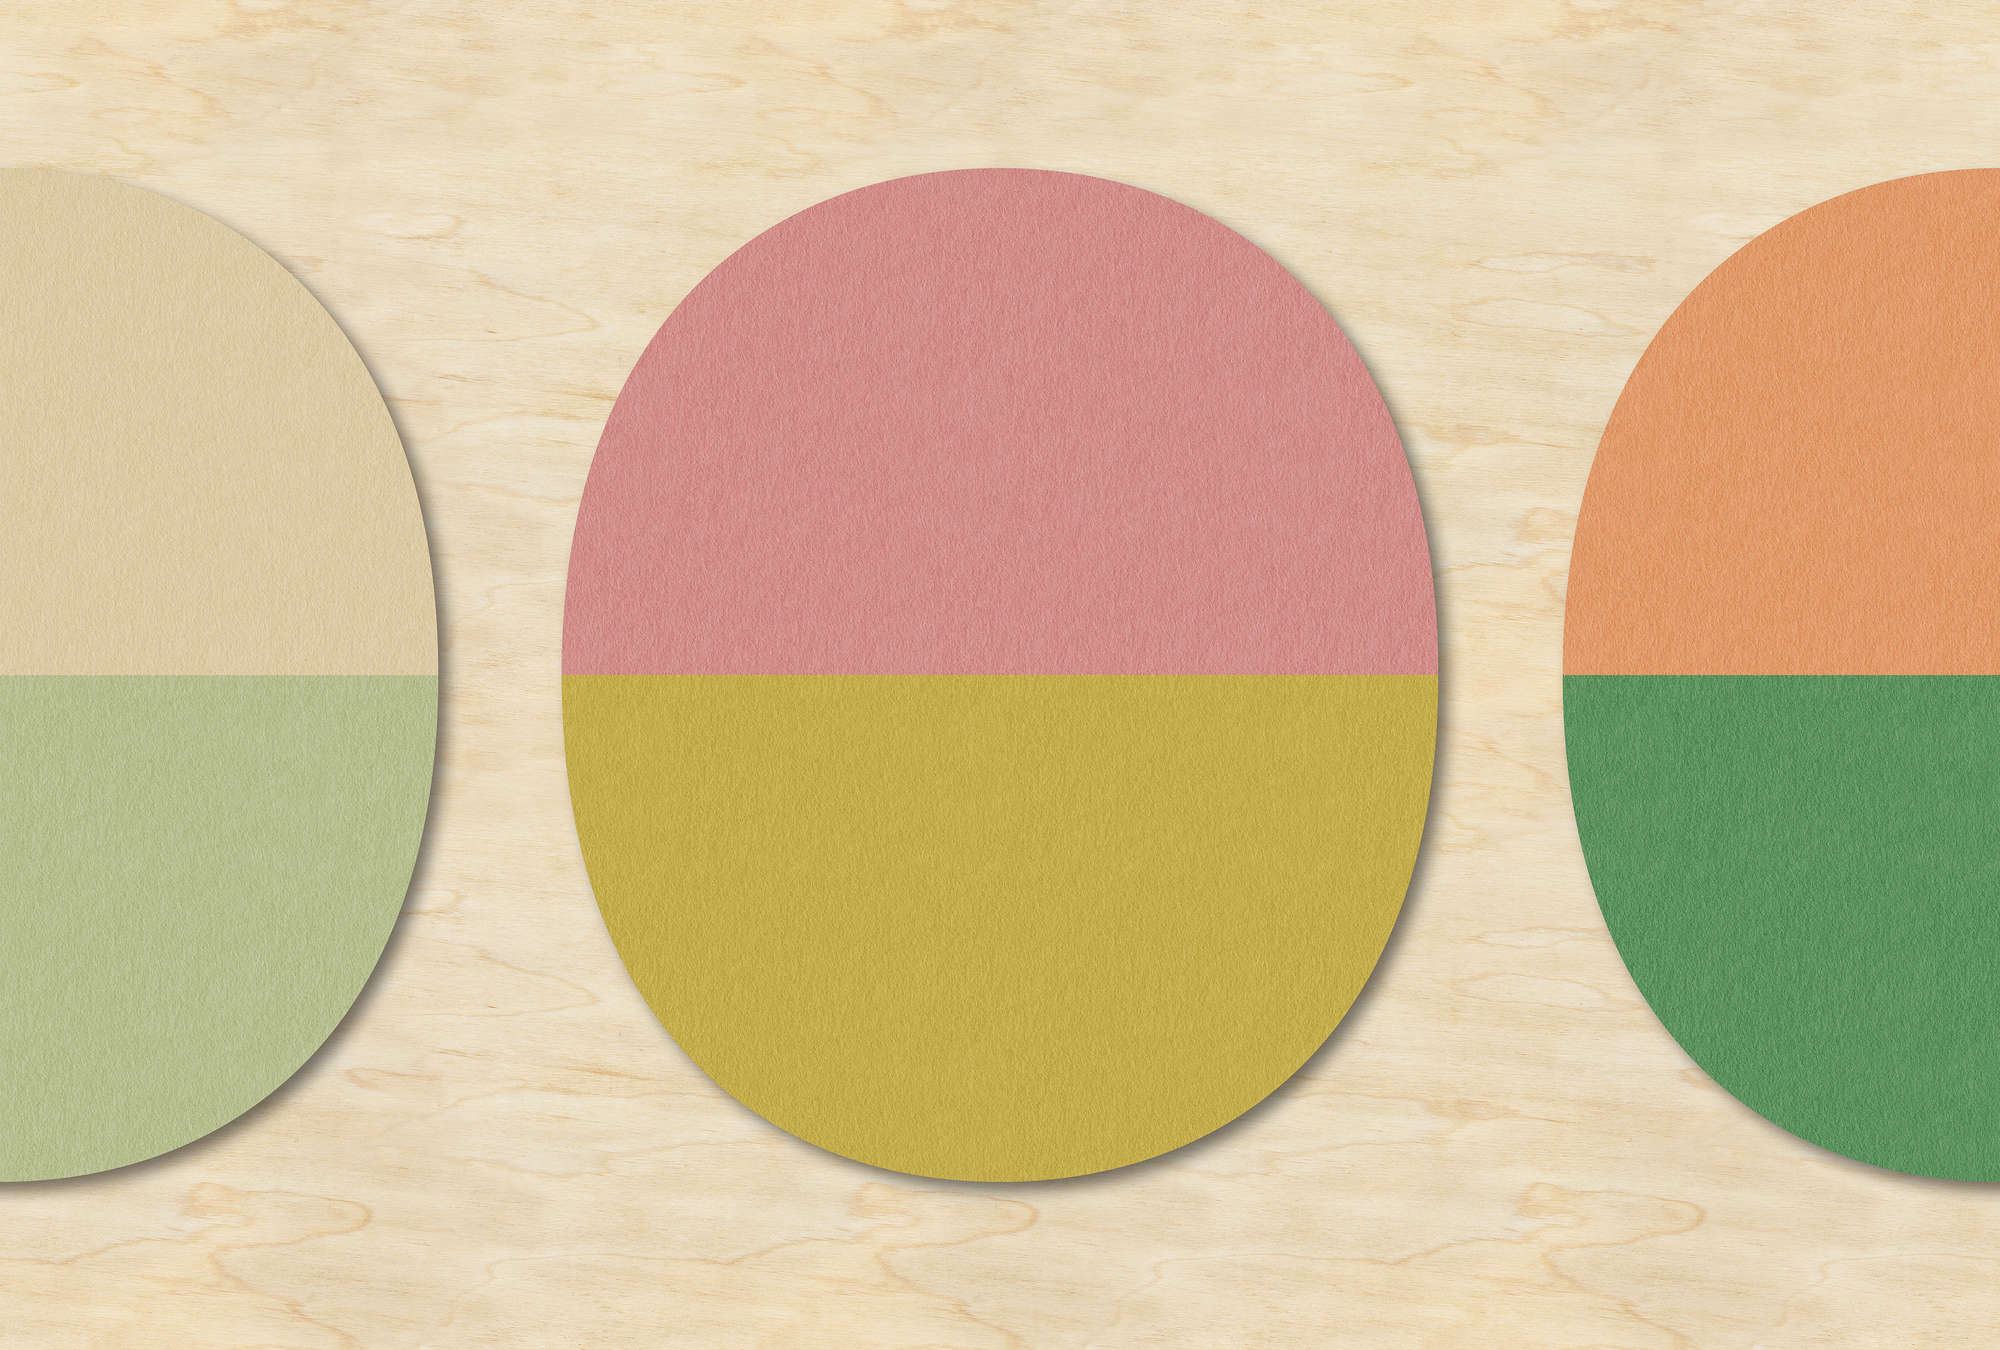             Split ovals 2 - Retro behang in multiplex, viltstructuur met kleurrijke ovalen - Beige, Groen | Mat glad vlies
        